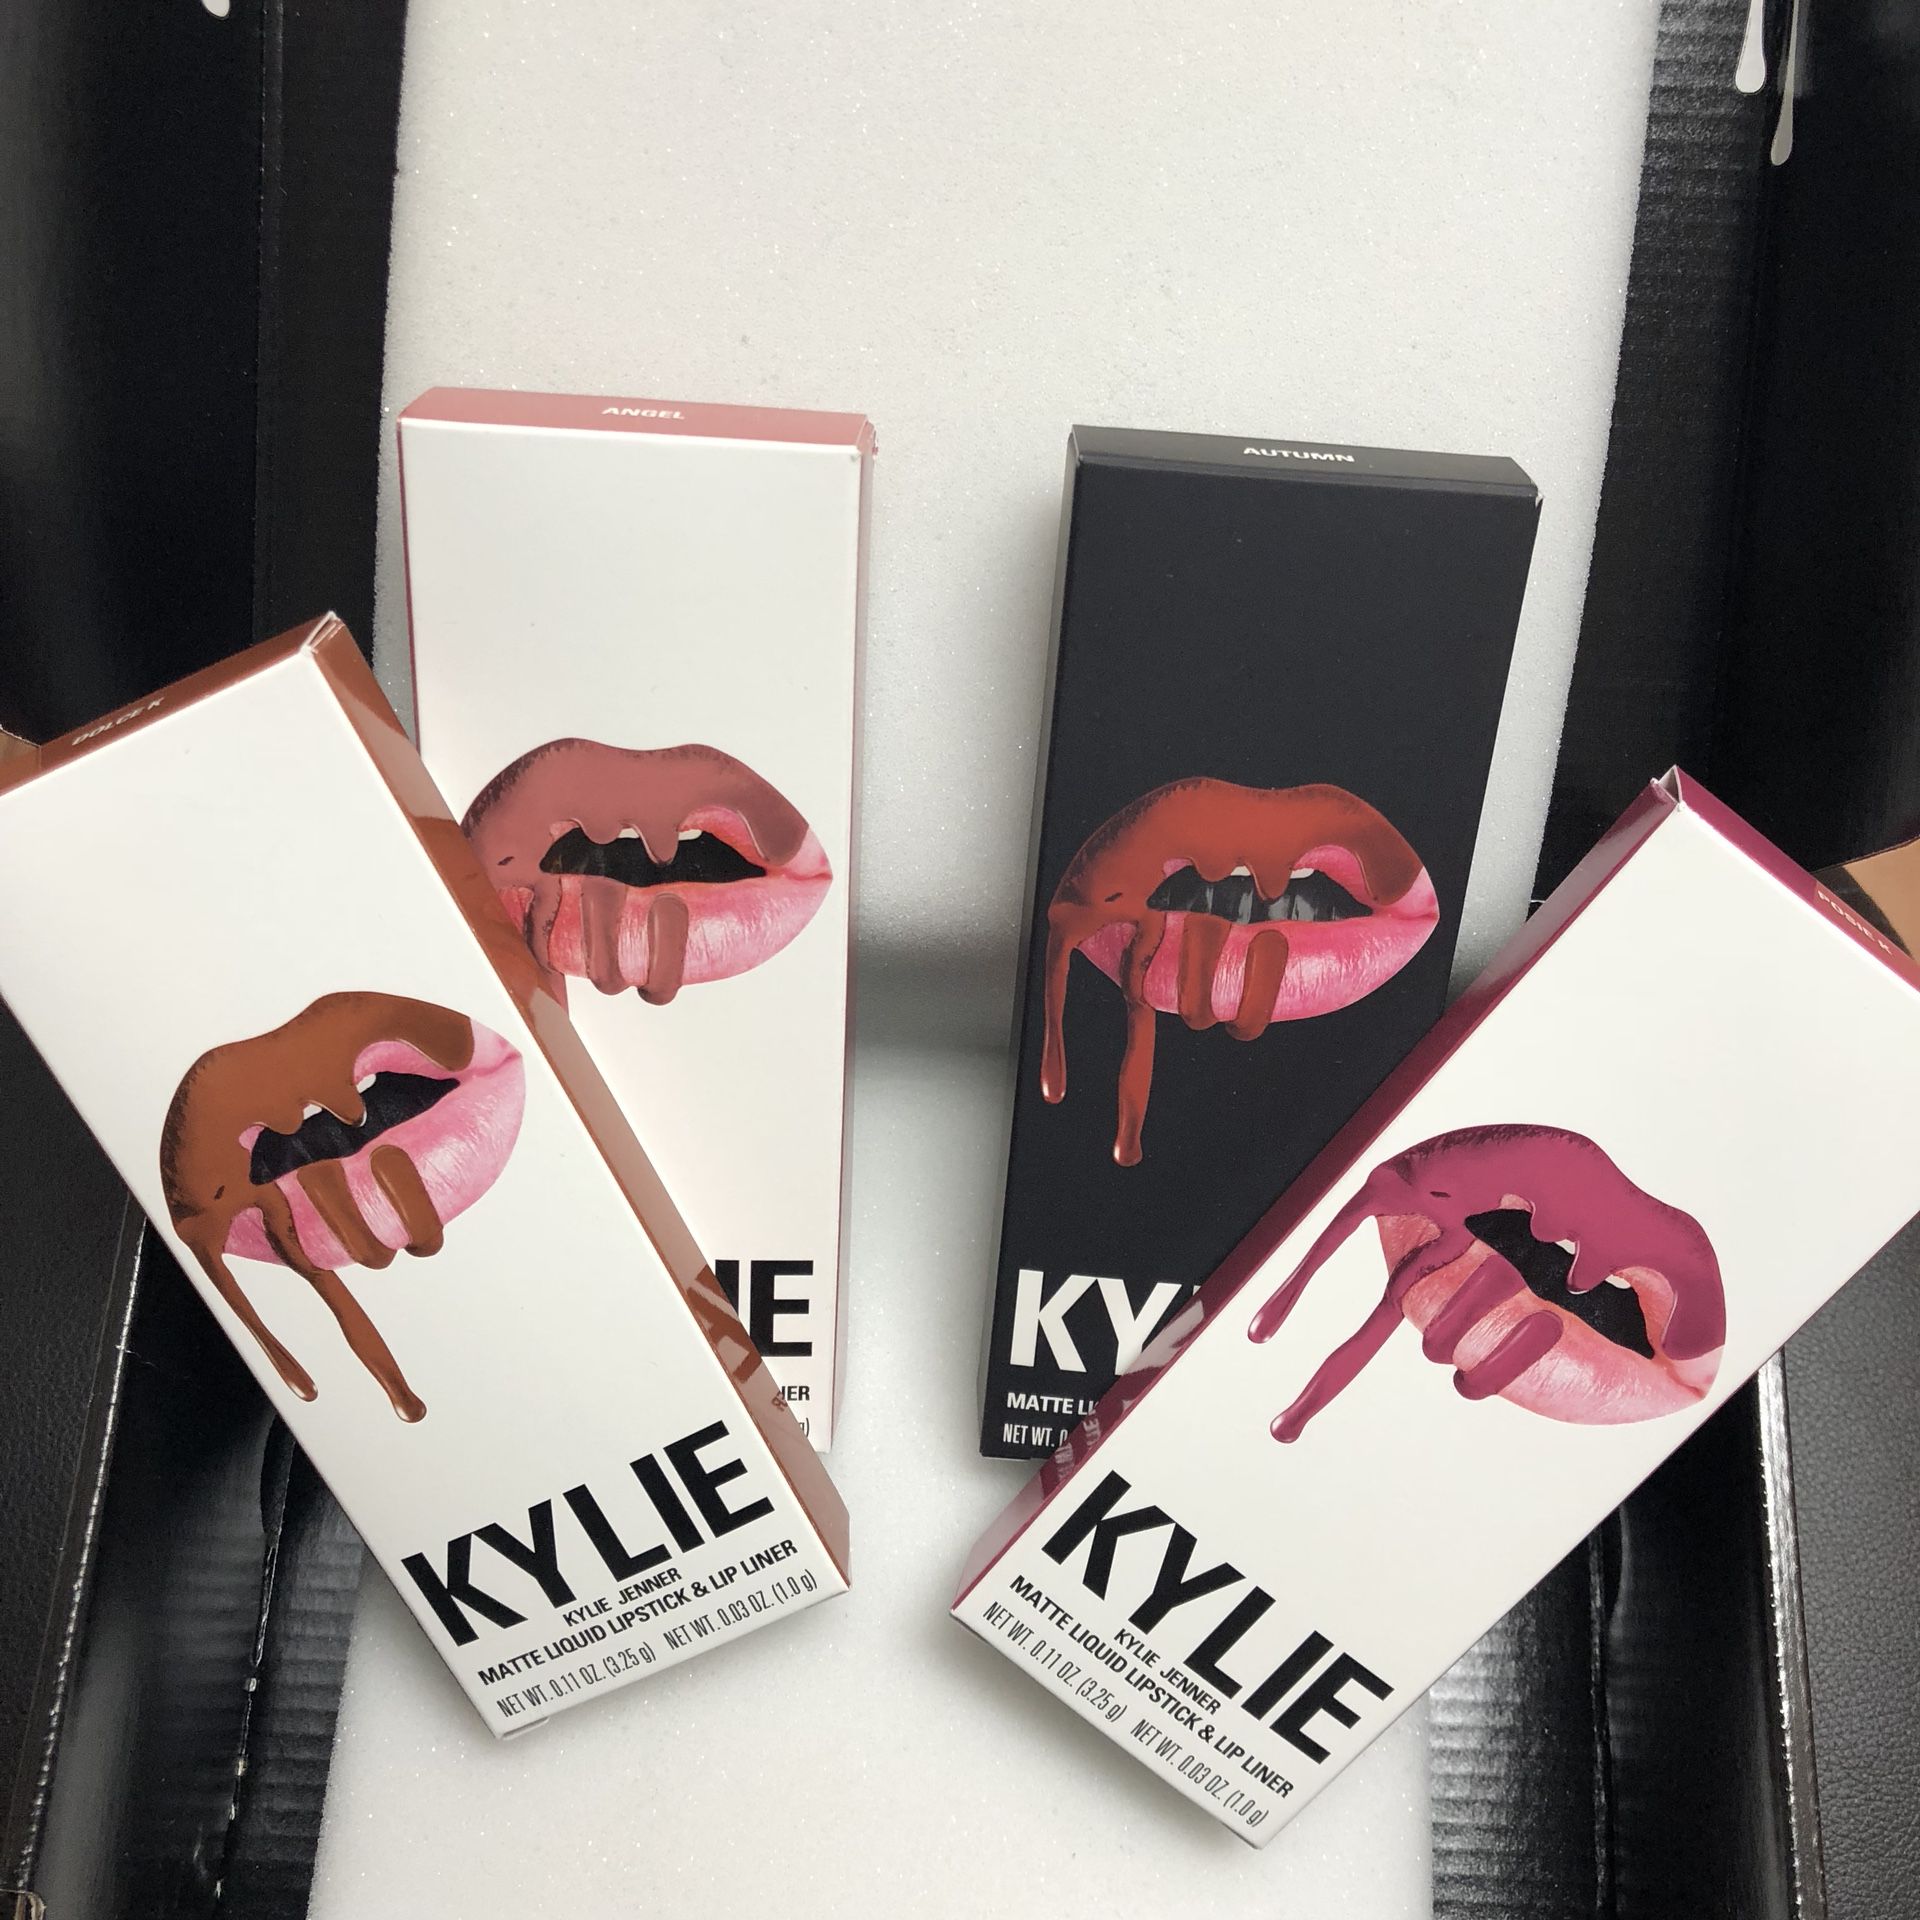 Kylie lip kits